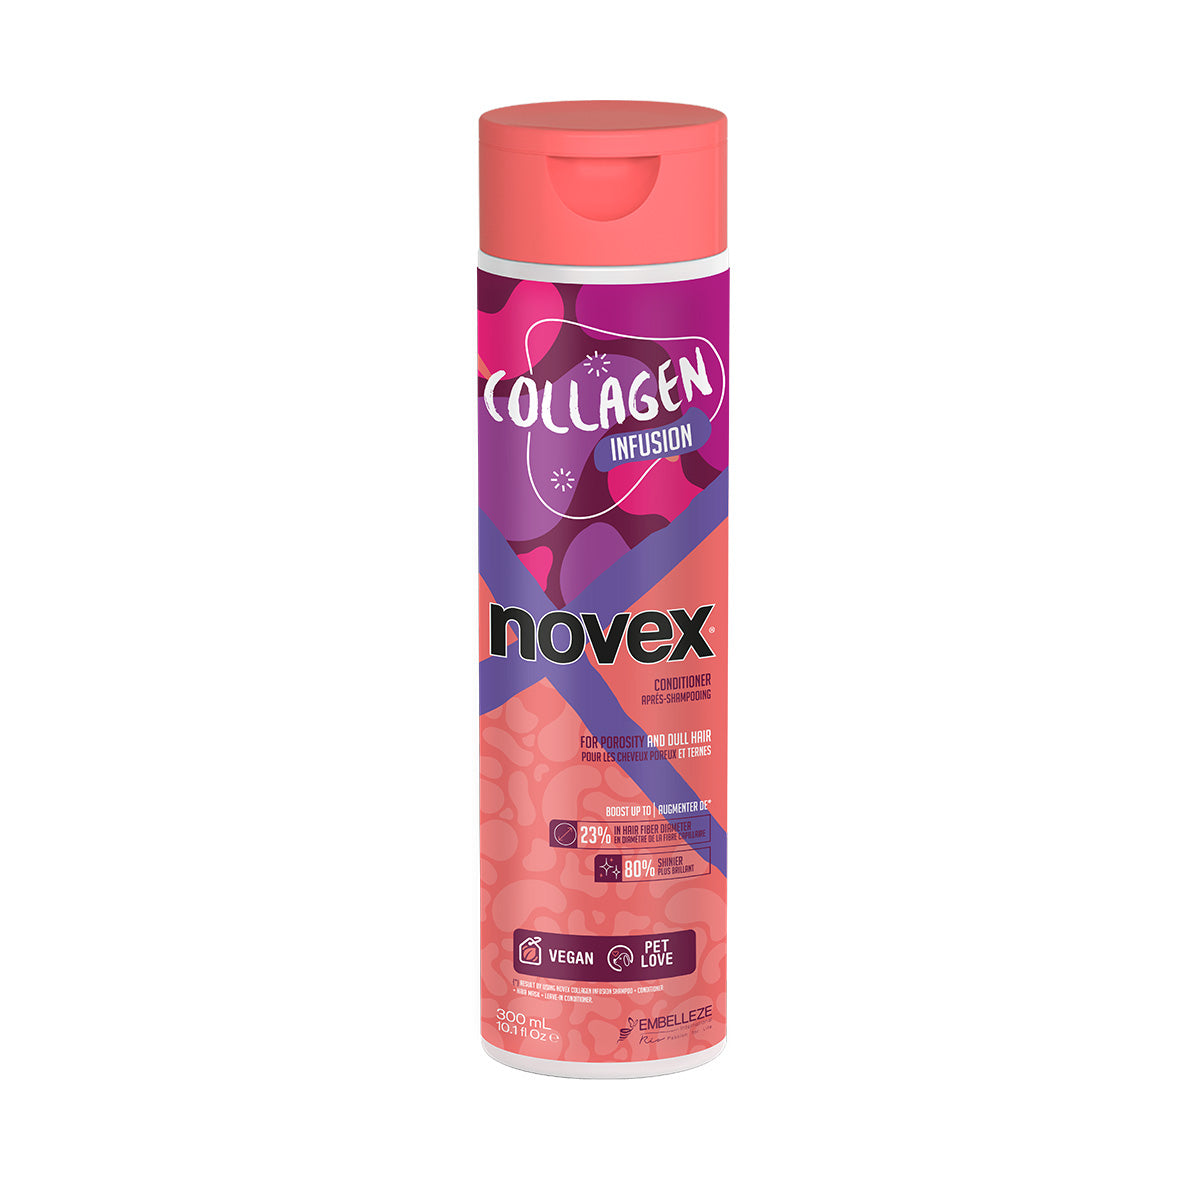 巴西 Novex 膠原蛋白護髮素 Novex Infused Collagen Conditioner 300ml